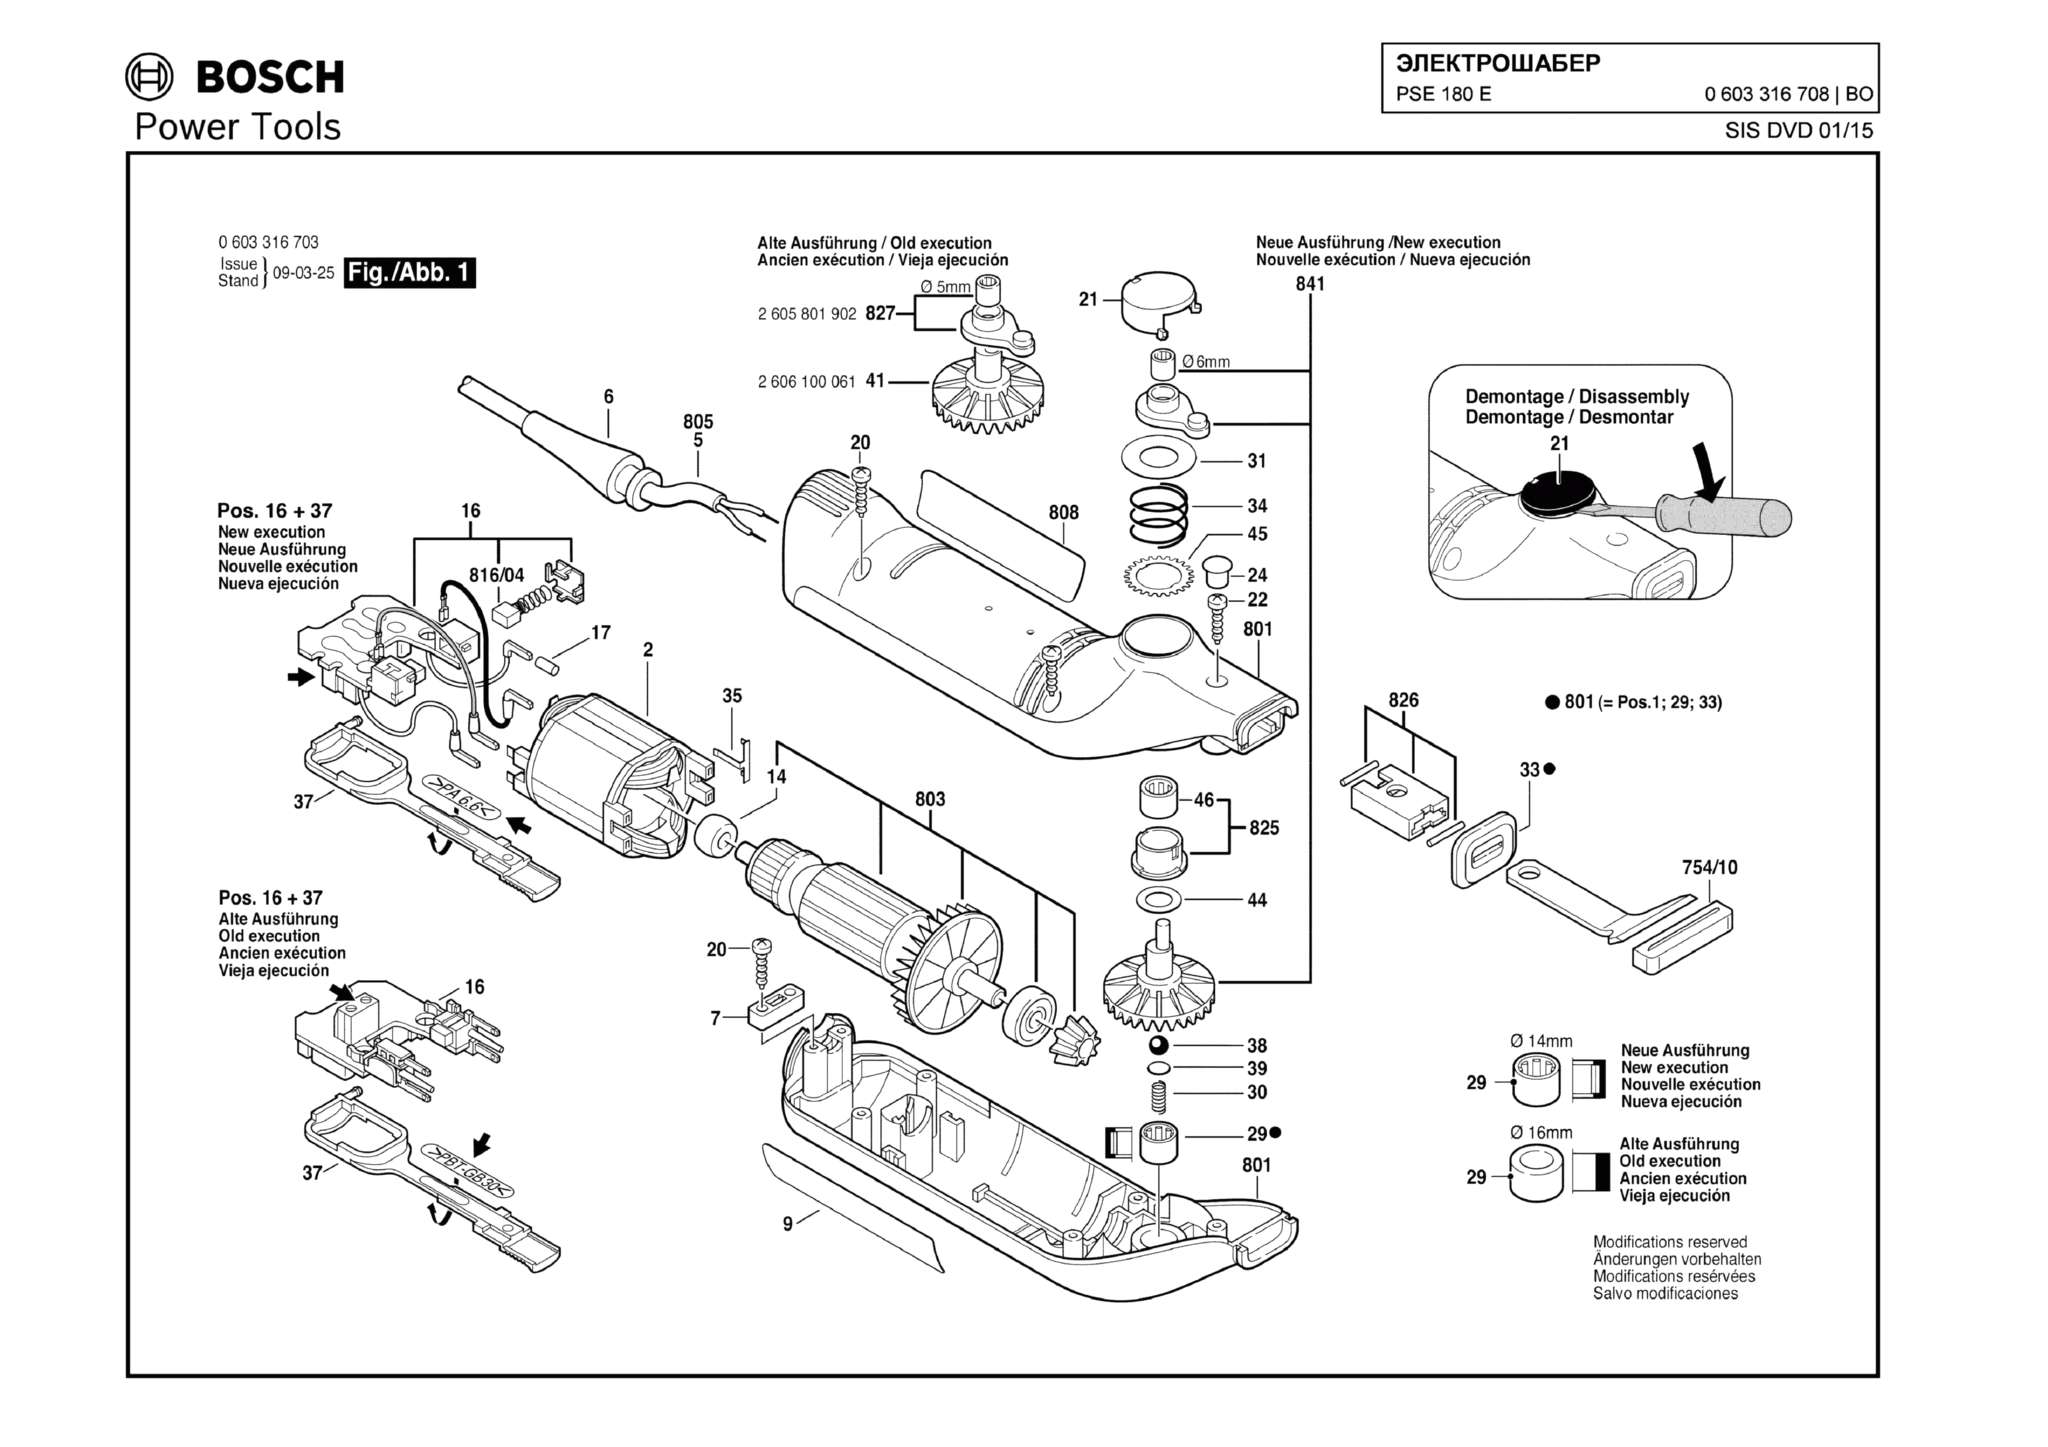 Запчасти, схема и деталировка Bosch PSE 180 E (ТИП 0603316708)